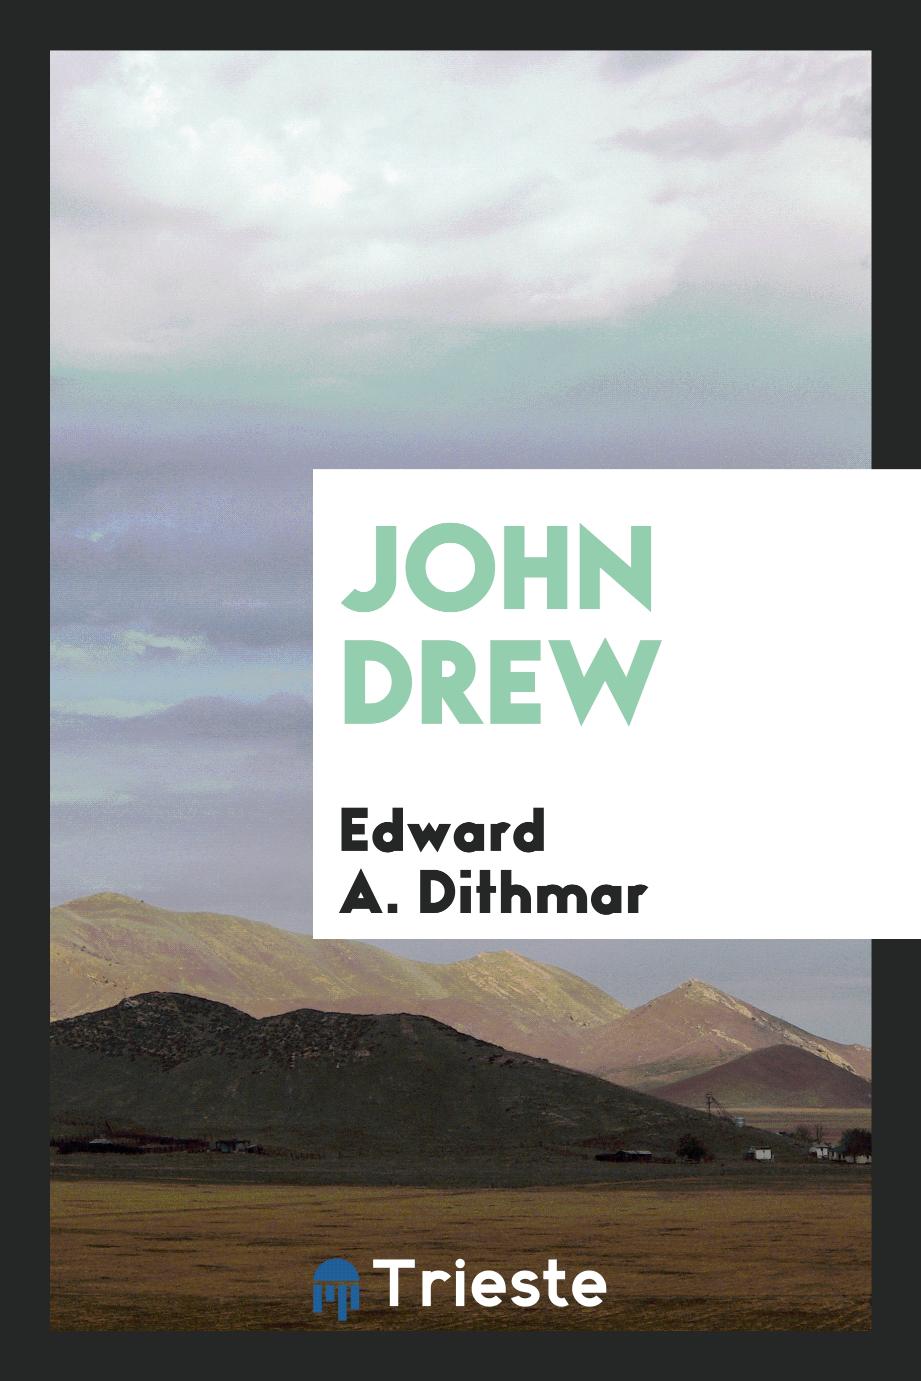 John Drew